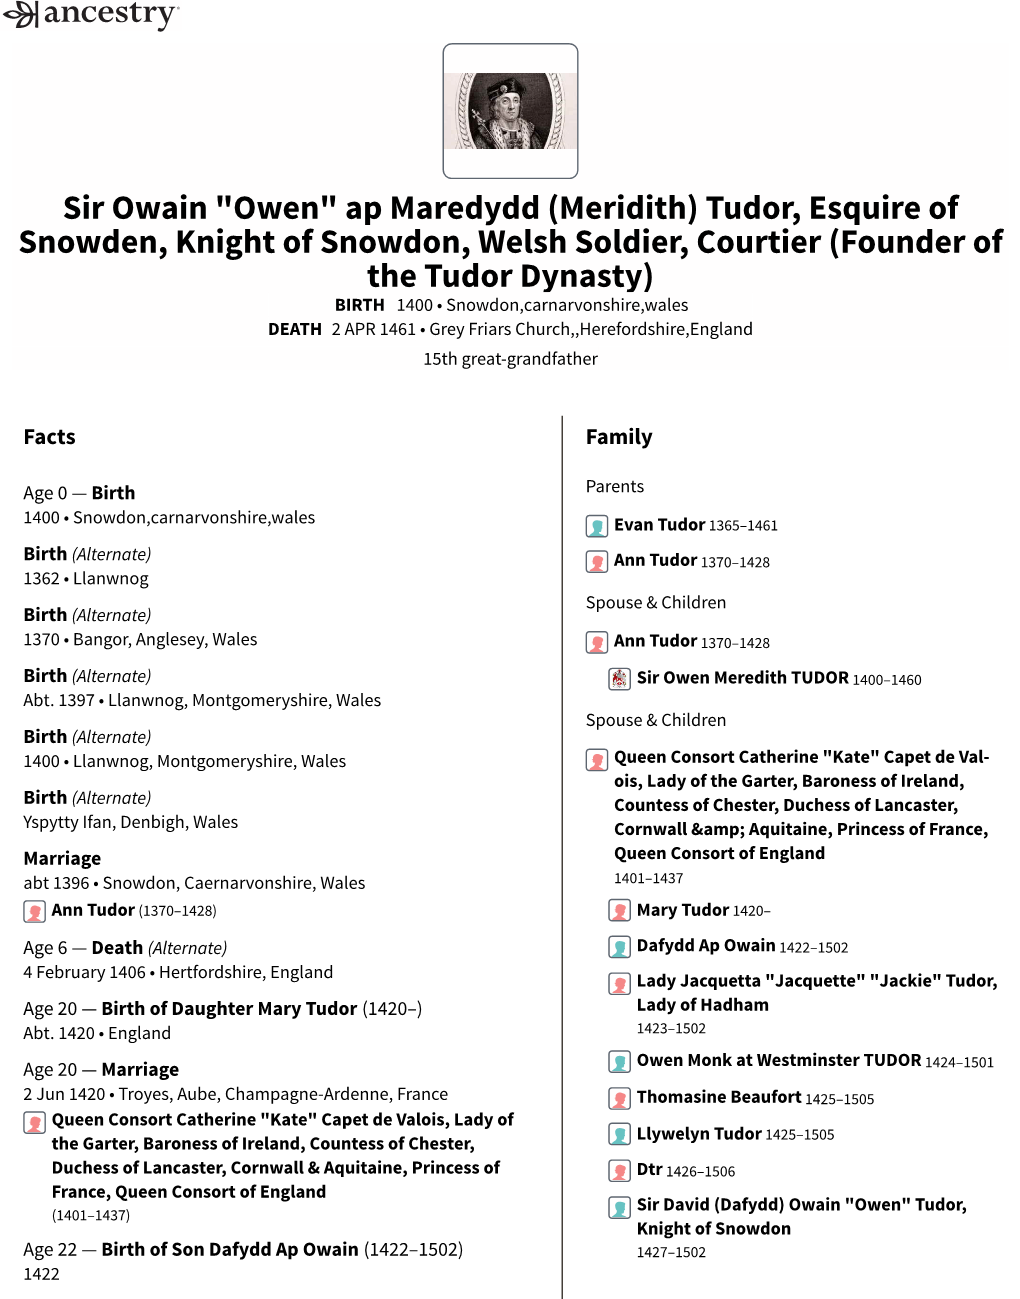 Sir Owain "Owen" Ap Maredydd (Meridith) Tudor, Esquire Of